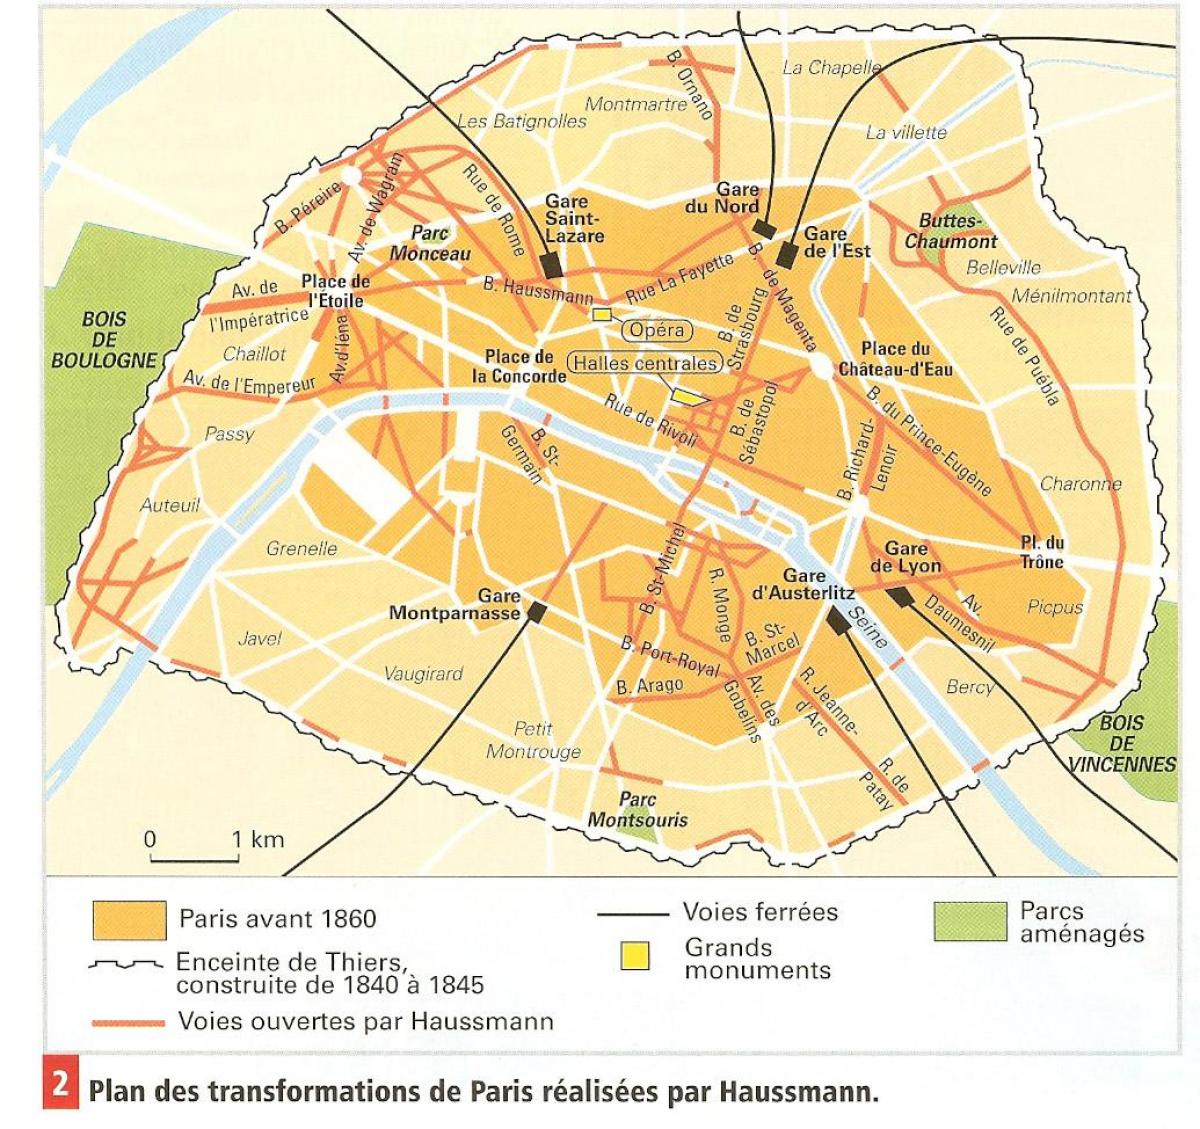 แผนที่ของ Haussmann ปารีส